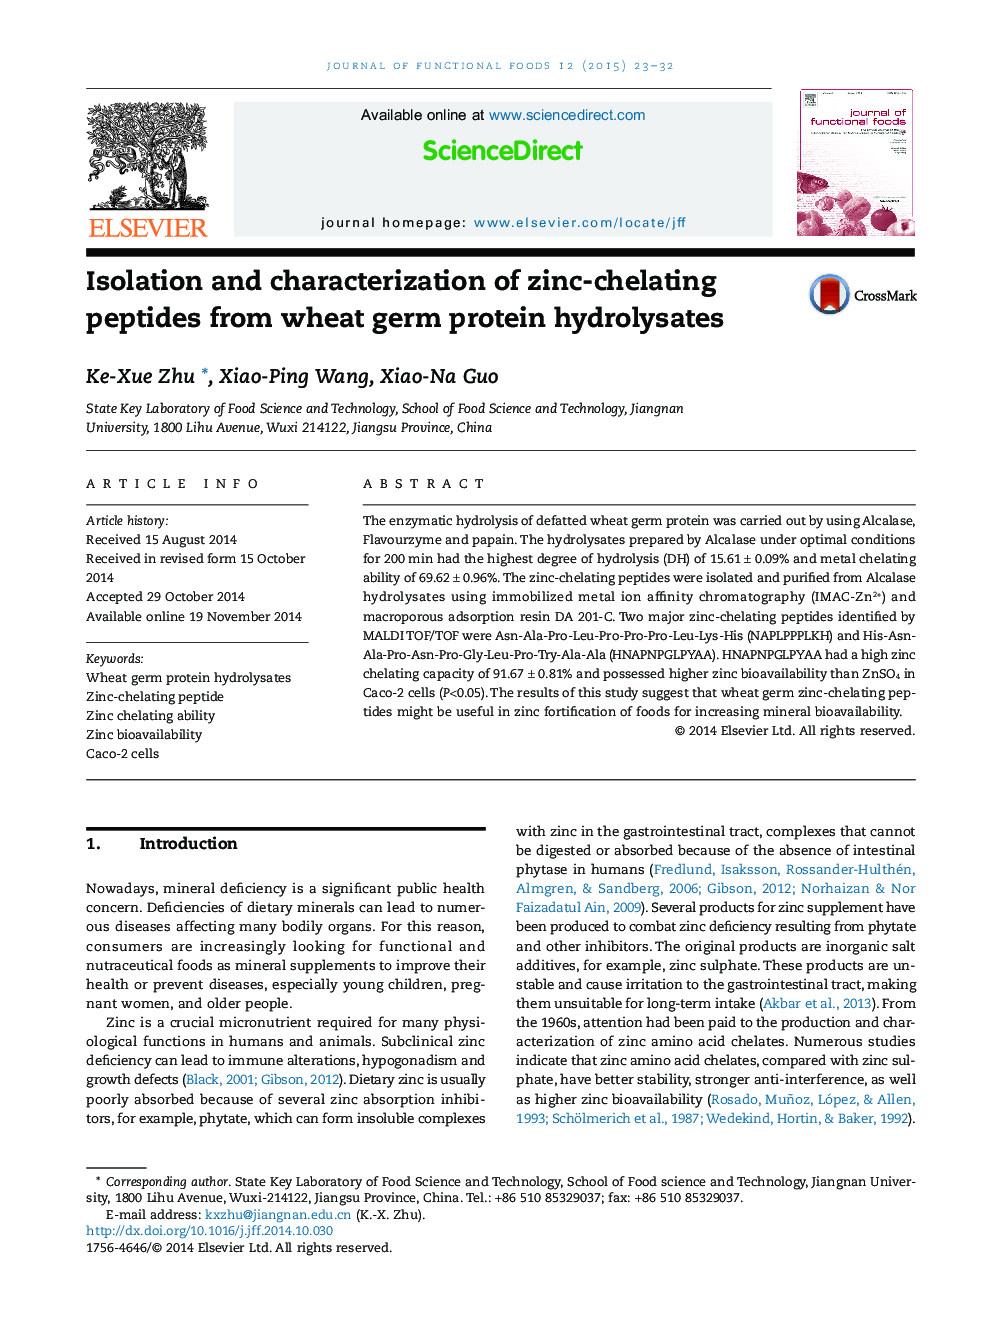 جداسازی و بررسی پپتید های روی کراتین از هیدرولیز پروتئین گندم 